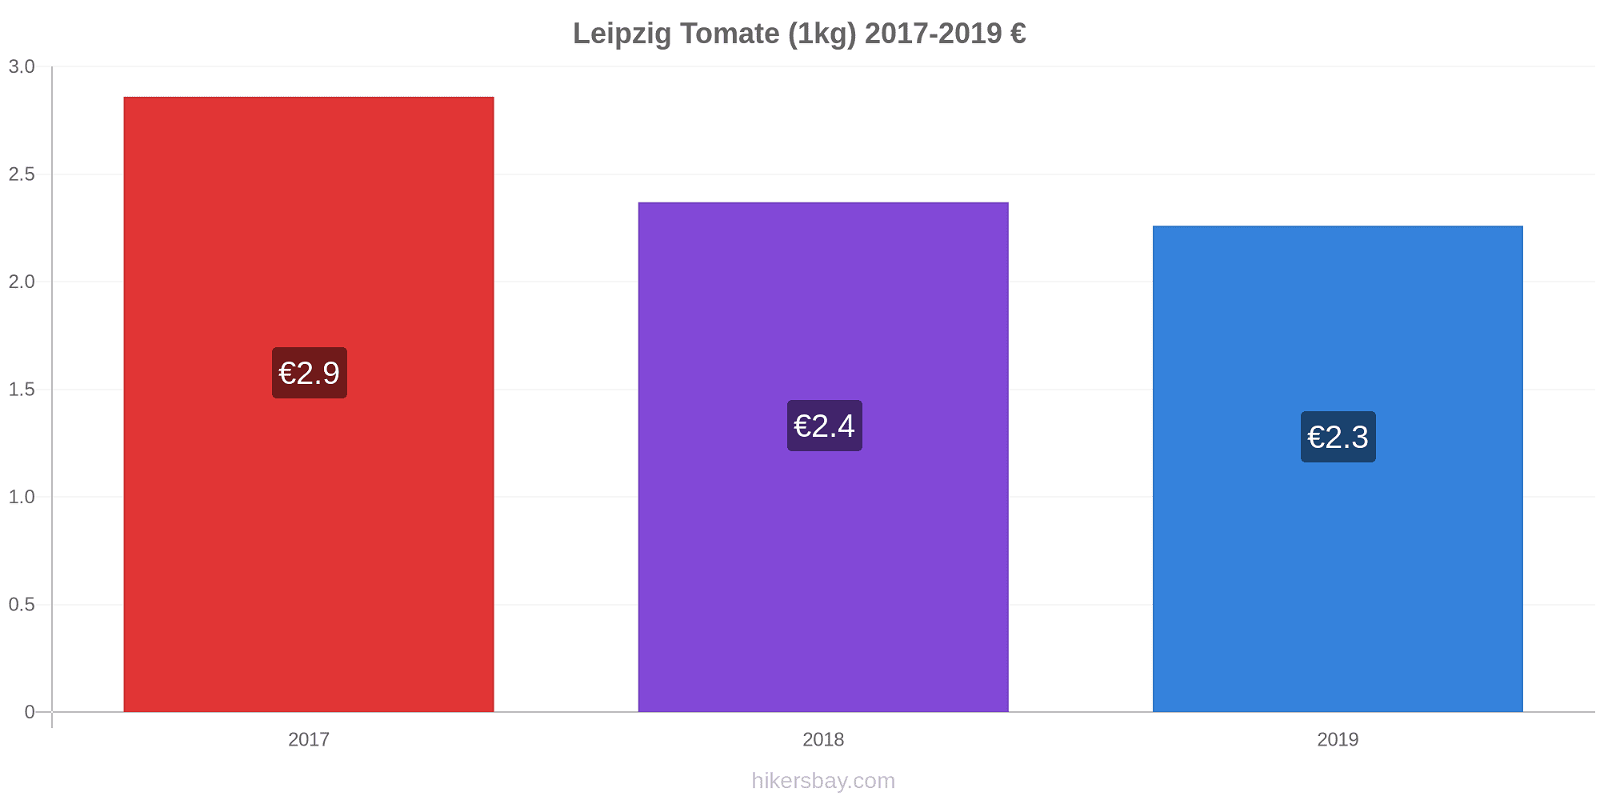 Leipzig variação de preço Tomate (1kg) hikersbay.com